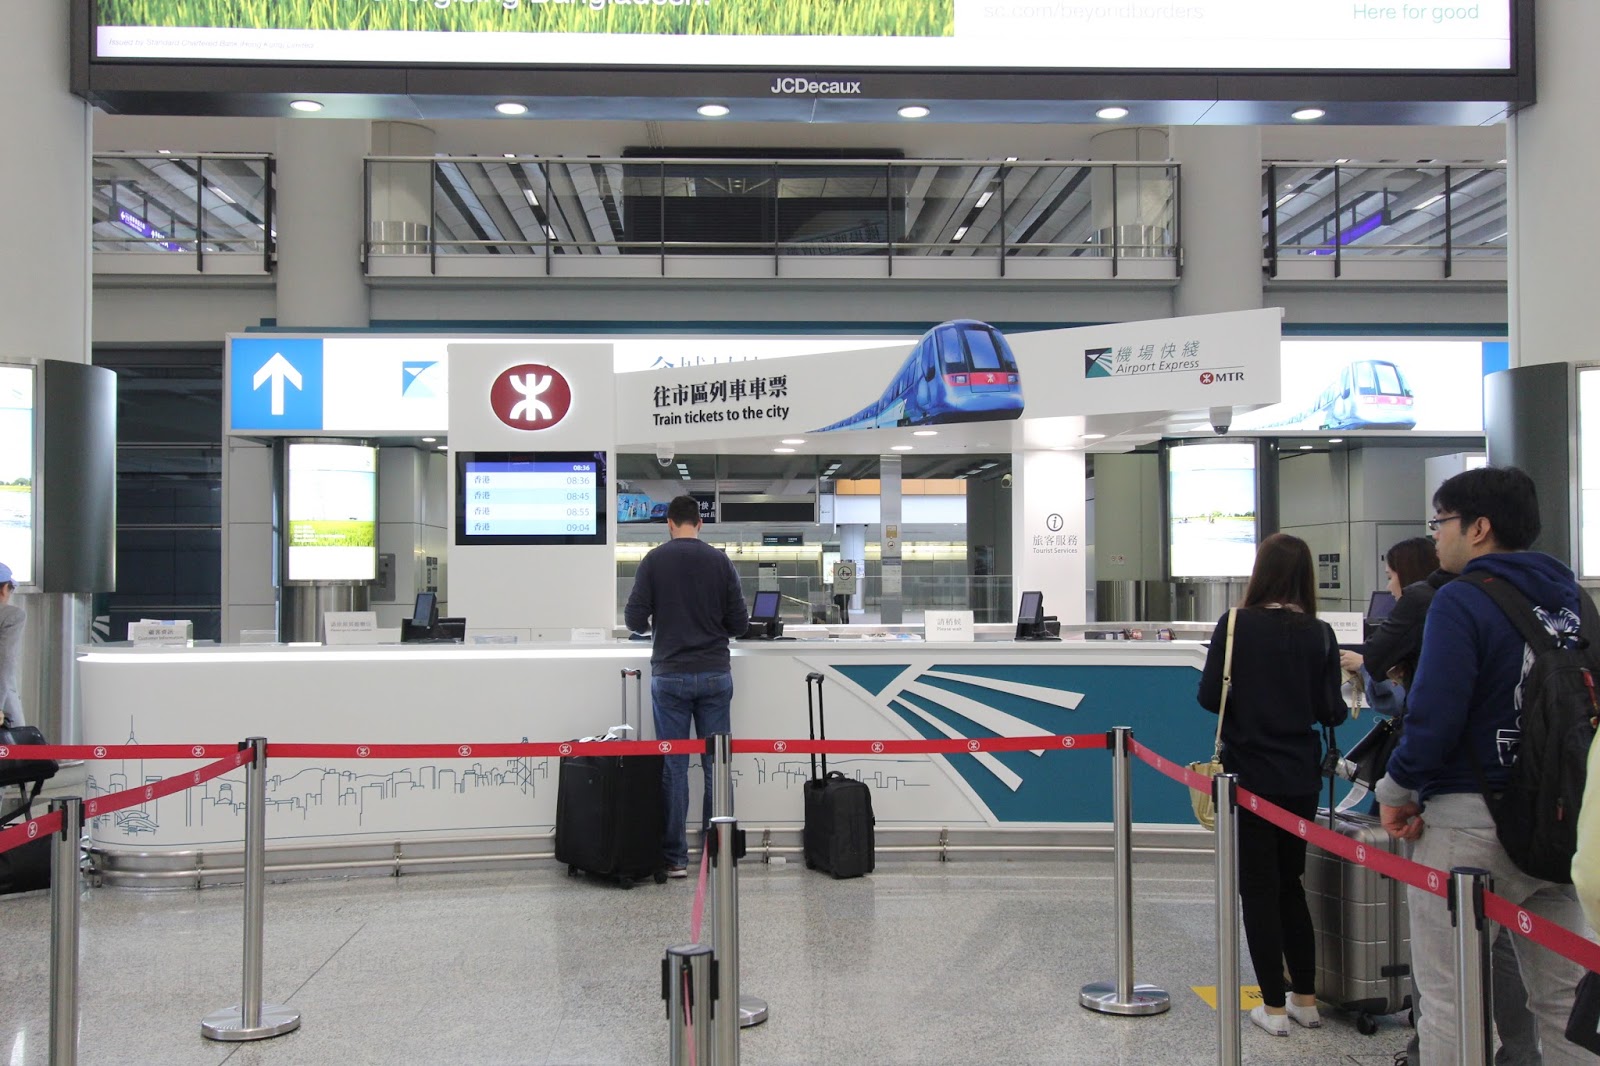 林公子生活遊記: 香港機場快線 快速往返 市區 機場 更可預掛行李 直接換票使用 極之方便預辦登機